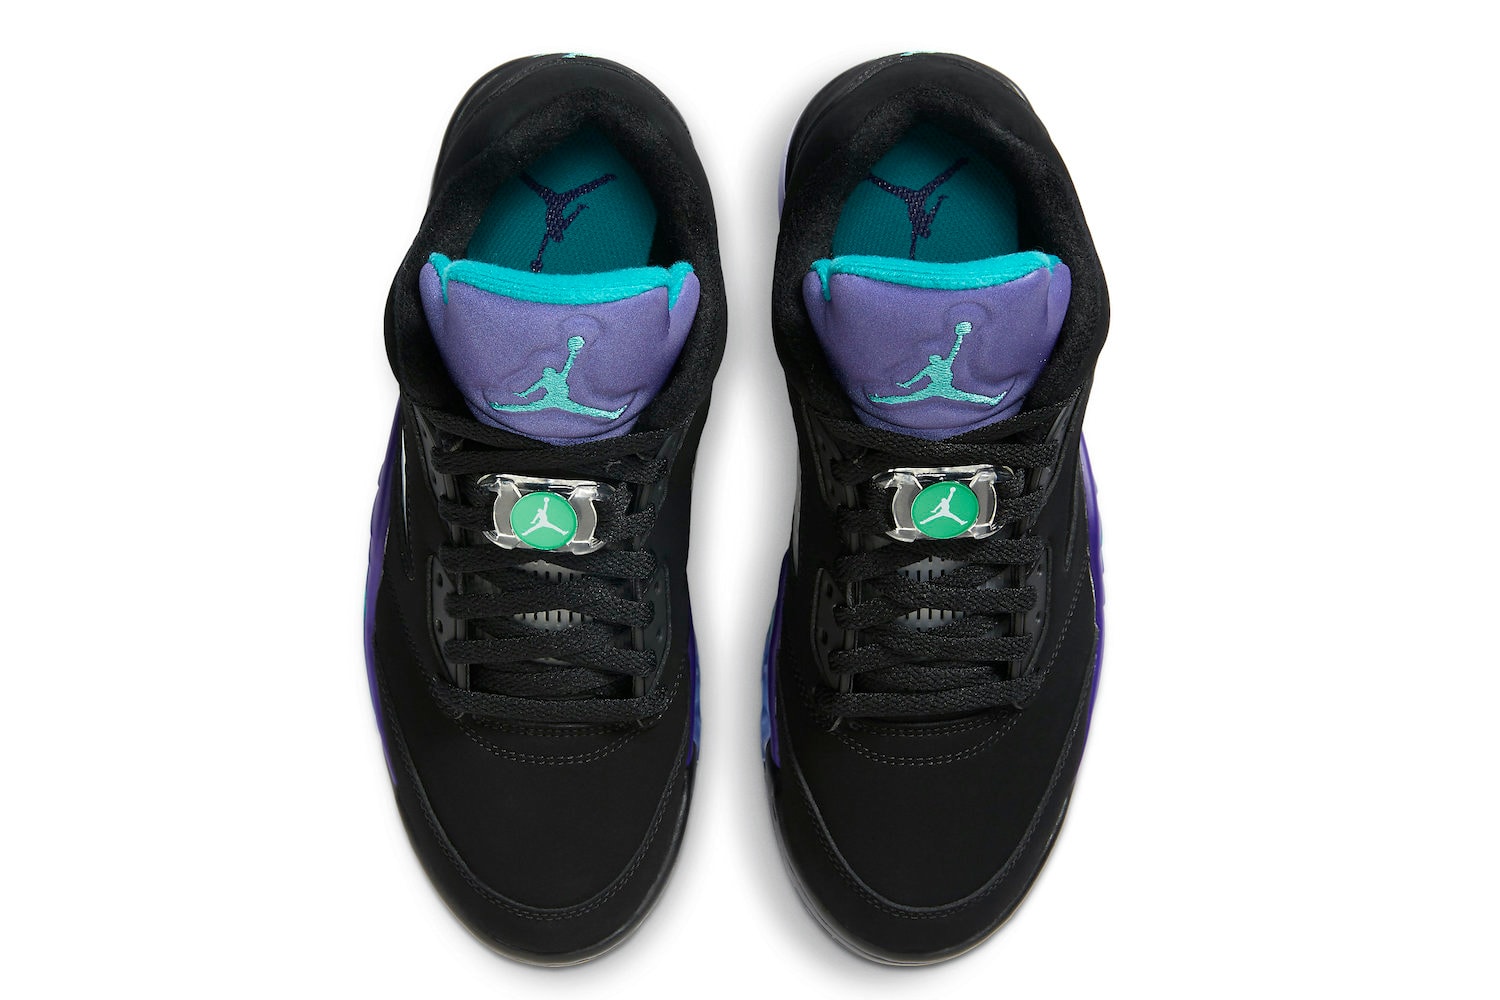 Air Jordan 5 “Black Grape”のゴルフシューズが登場 ナイキ nike エアジョーダン5 Air Jordan 5 Low Golf Black Grape Release Info CU4523-001 Date Buy Price black Purple Teal Ice New Emerald